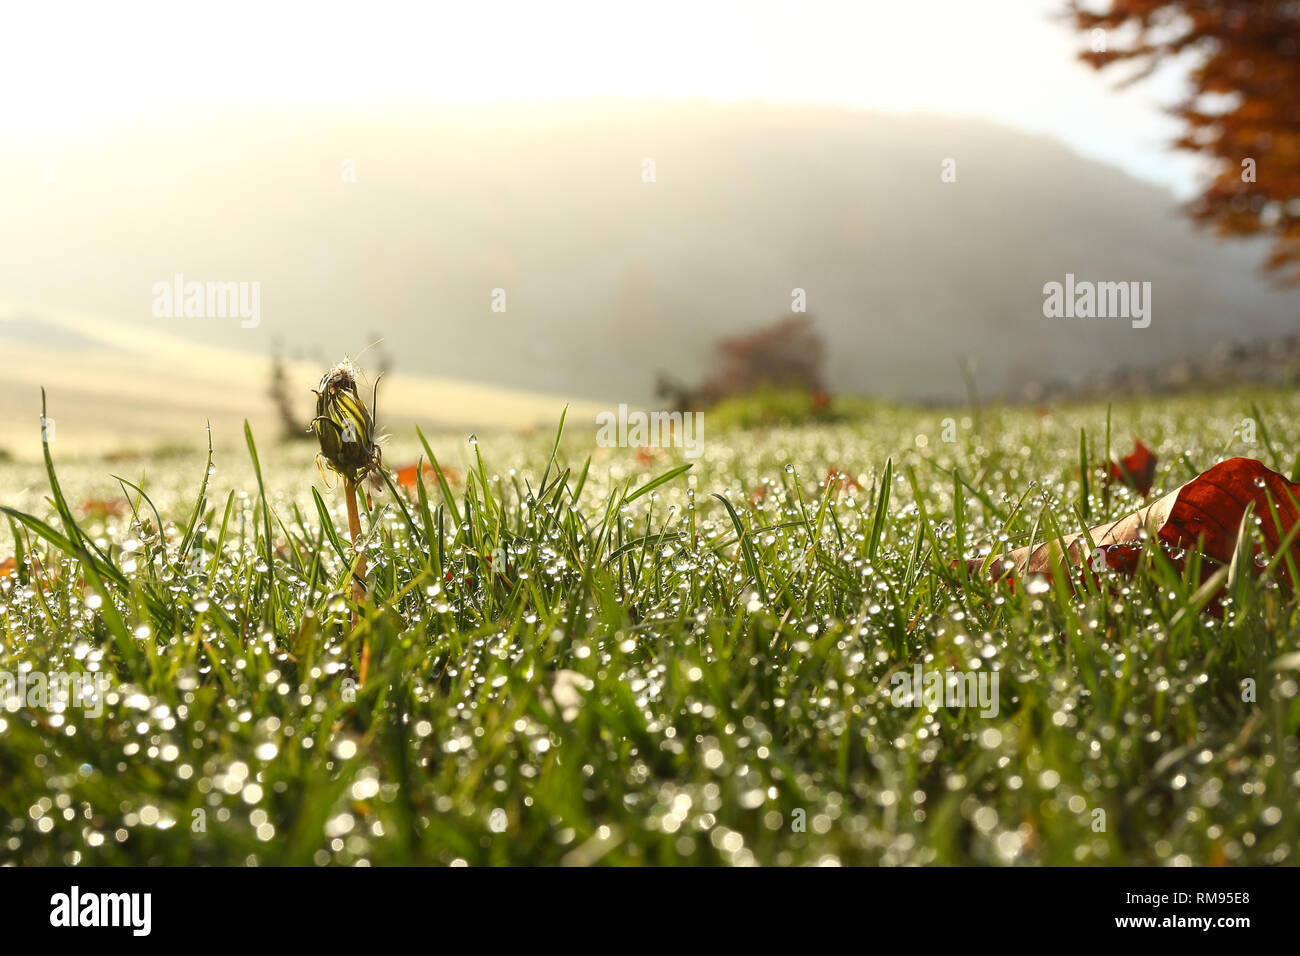 La rugiada sull'erba in presenza di luce solare con piacevole effetto di sfocatura Foto Stock